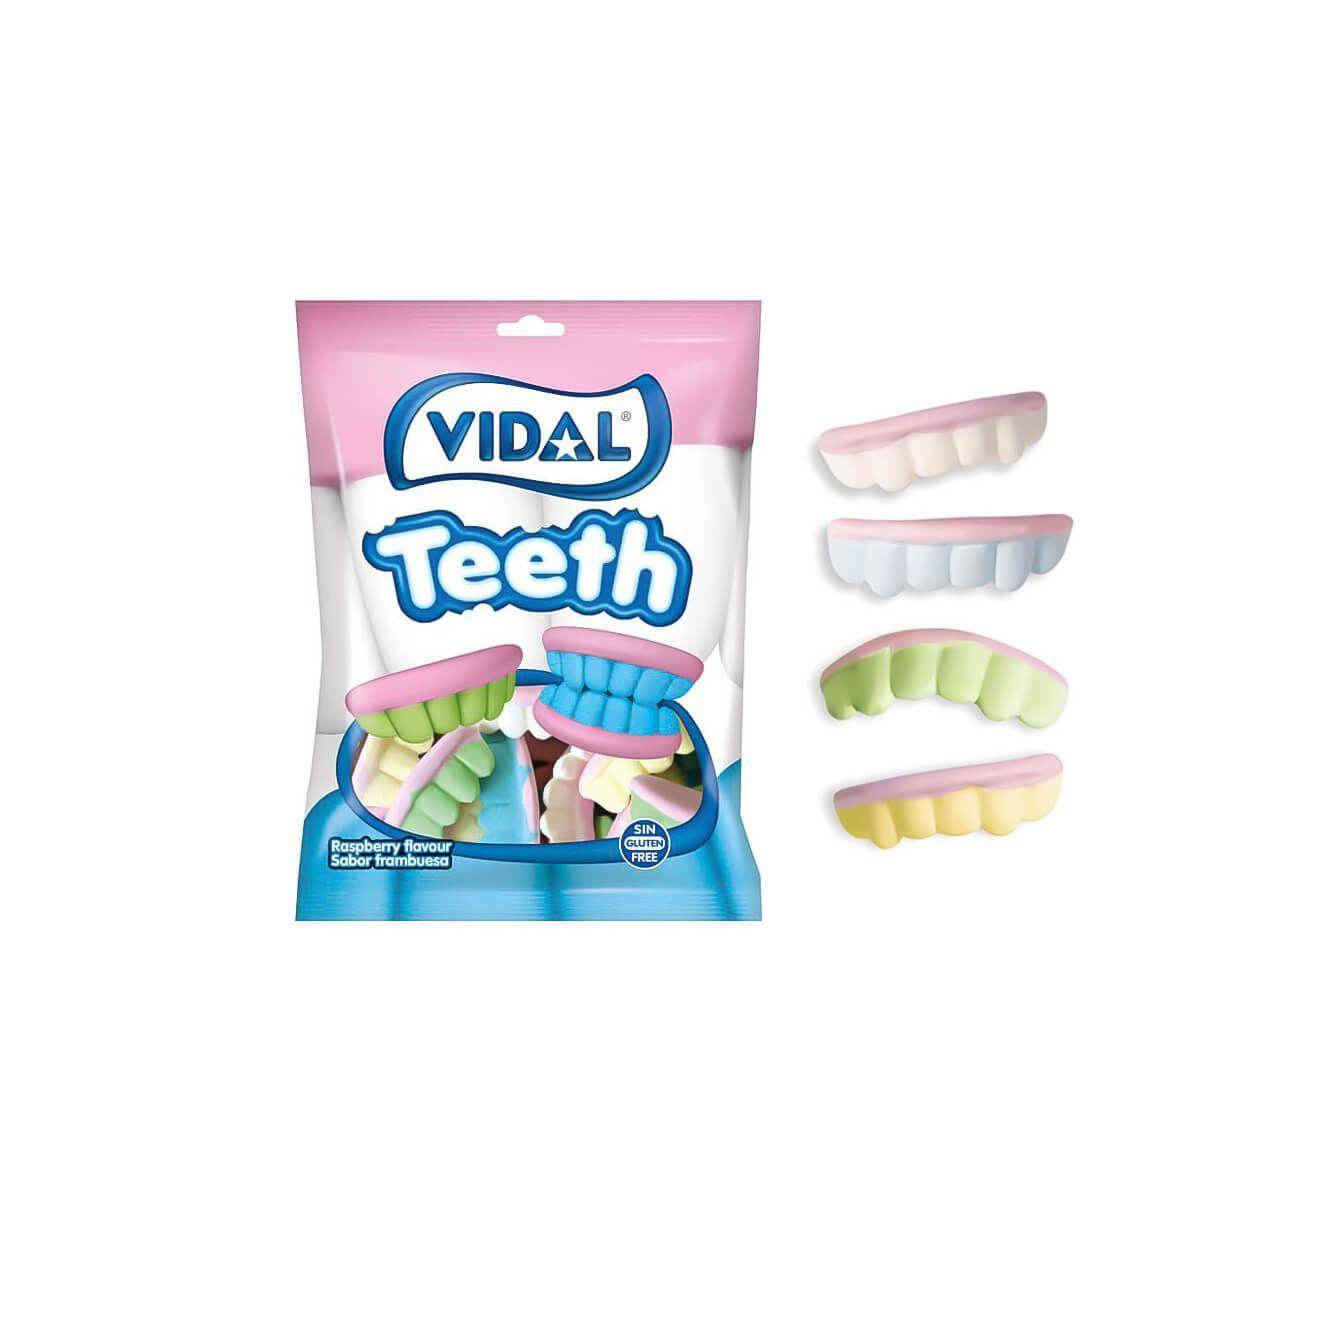 Vidal - Golosinas de Dentaduras de Vidal 14 bolsas de 70 gr - Auténticas dentaduras Vidal sabor frambuesa. Muy realistas y de diferentes colores, azul, amarillo, verde, rosa y blanco. ¡listas para hincarles el diente!